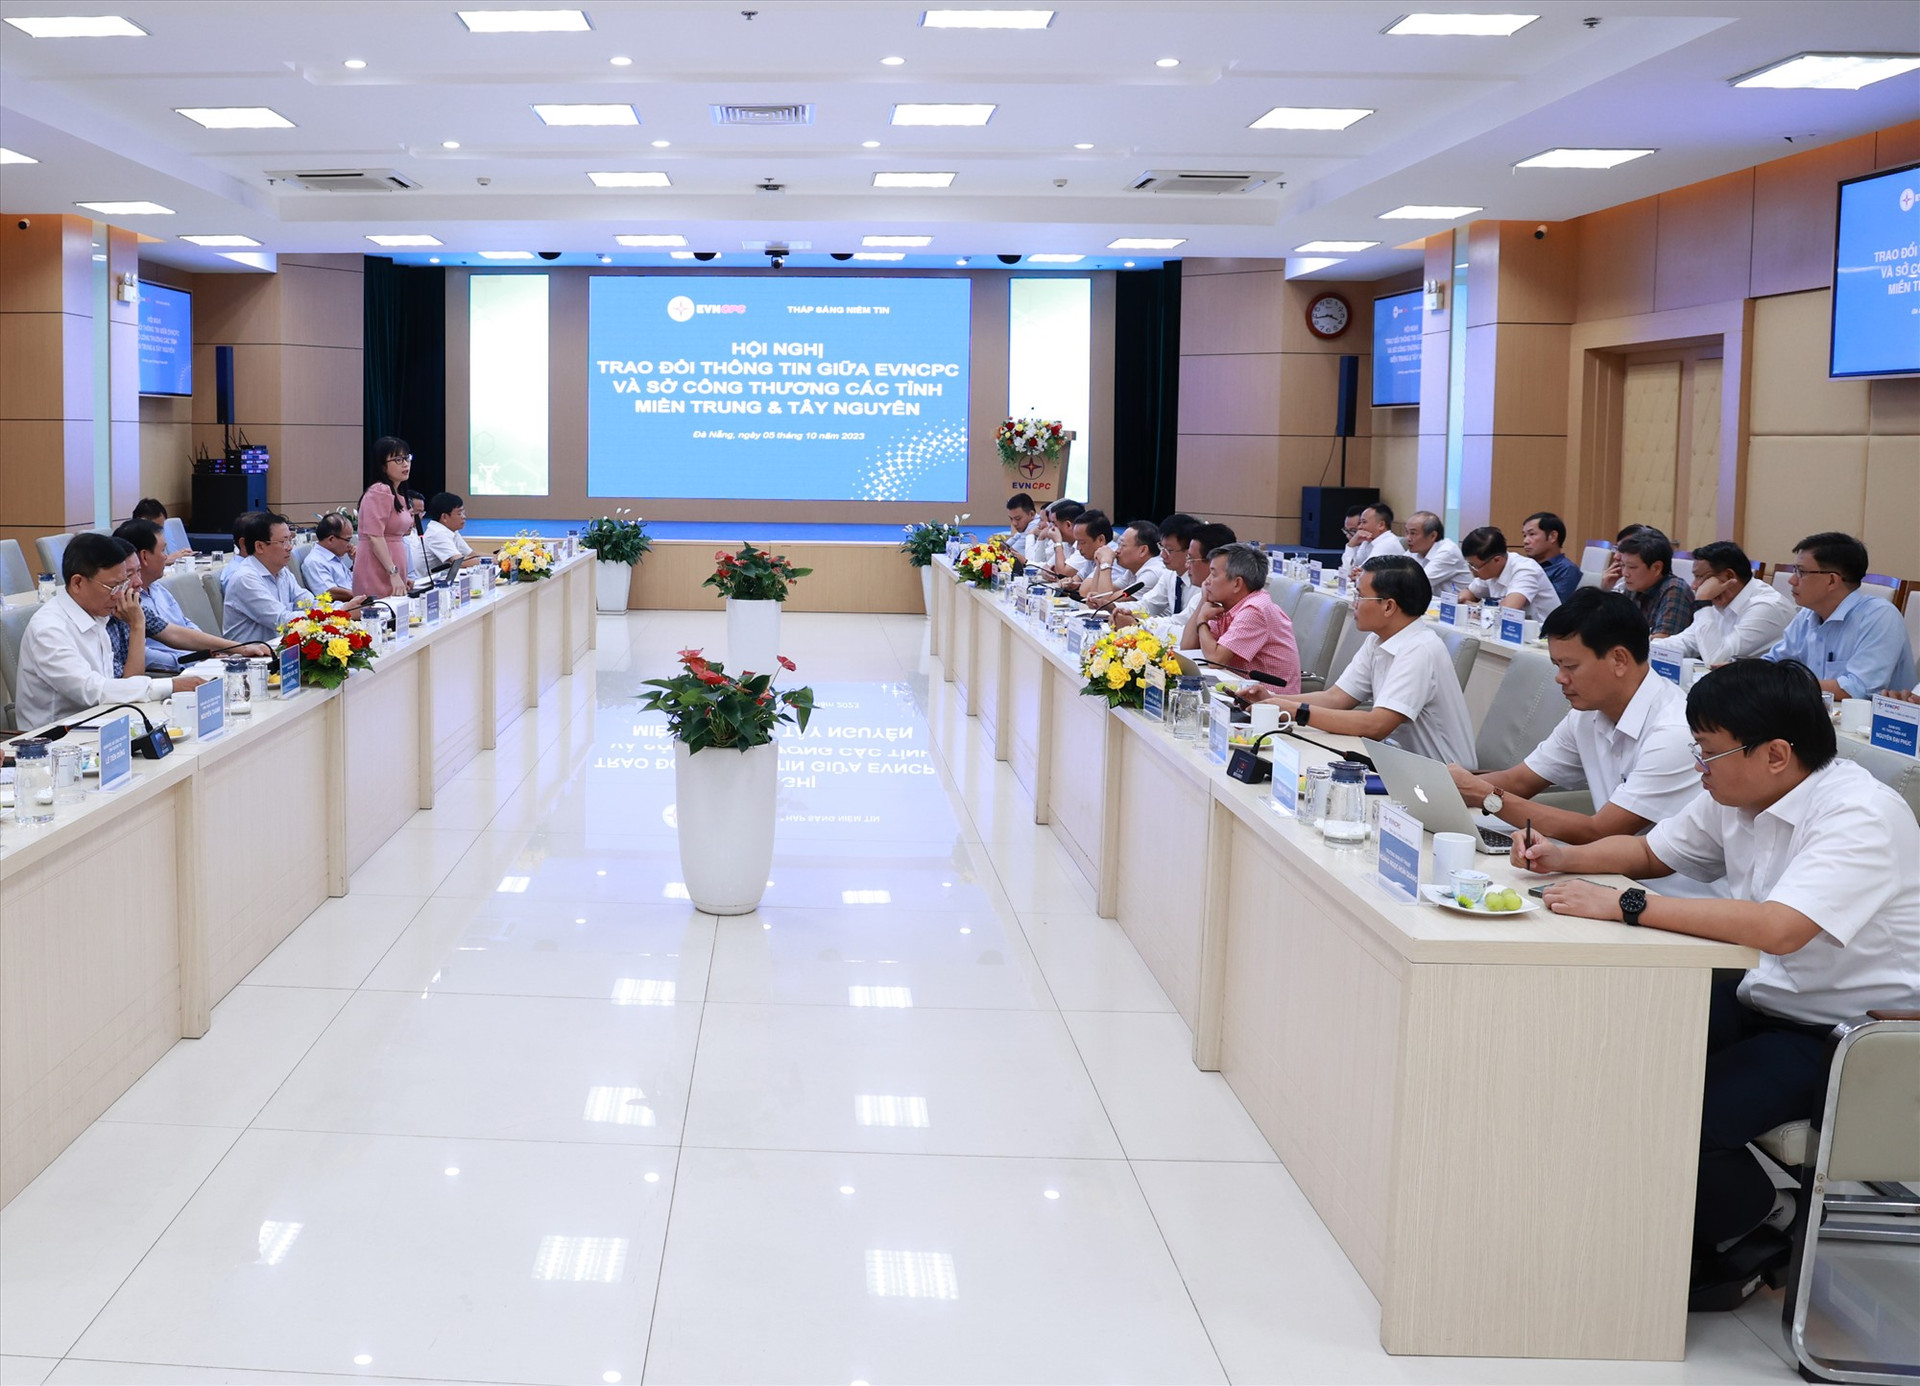 Tổng công ty Điện lực miền Trung (EVNCPC) vừa tổ chức gặp mặt lãnh đạo lãnh đạo các sở công thương 13 tỉnh, thành miền Trung - Tây Nguyên bàn về trao đổi thông tin về tình hình cung cấp điện trong thơi gian đến.